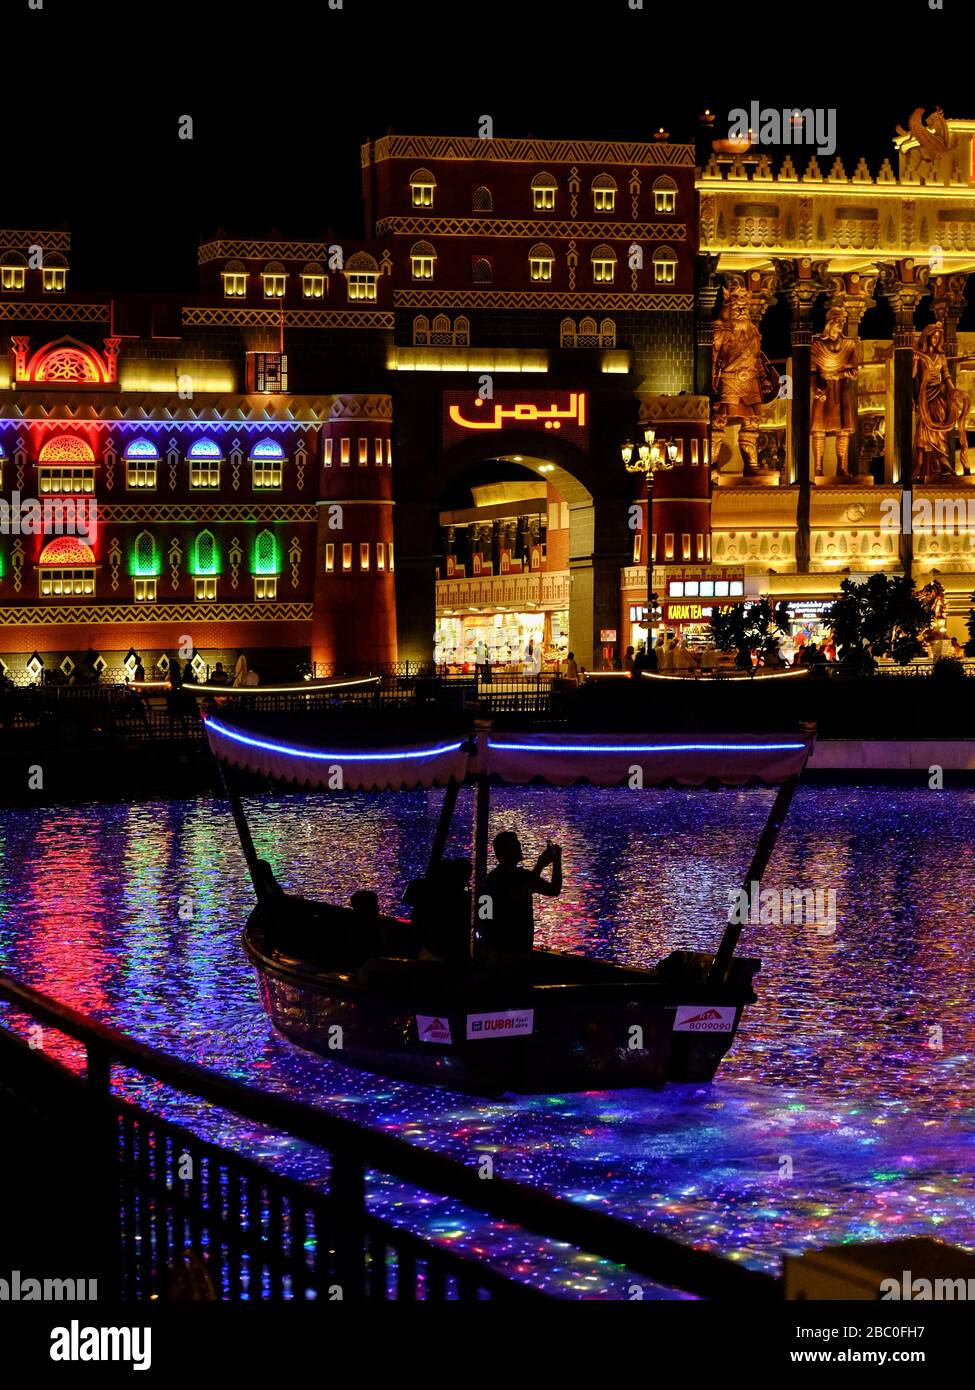 Prise de vue nocturne dans Global Village, Dubaï, Émirats arabes Unis. Global Village combine des cultures de 90 pays à travers le monde en un seul endroit. Banque D'Images